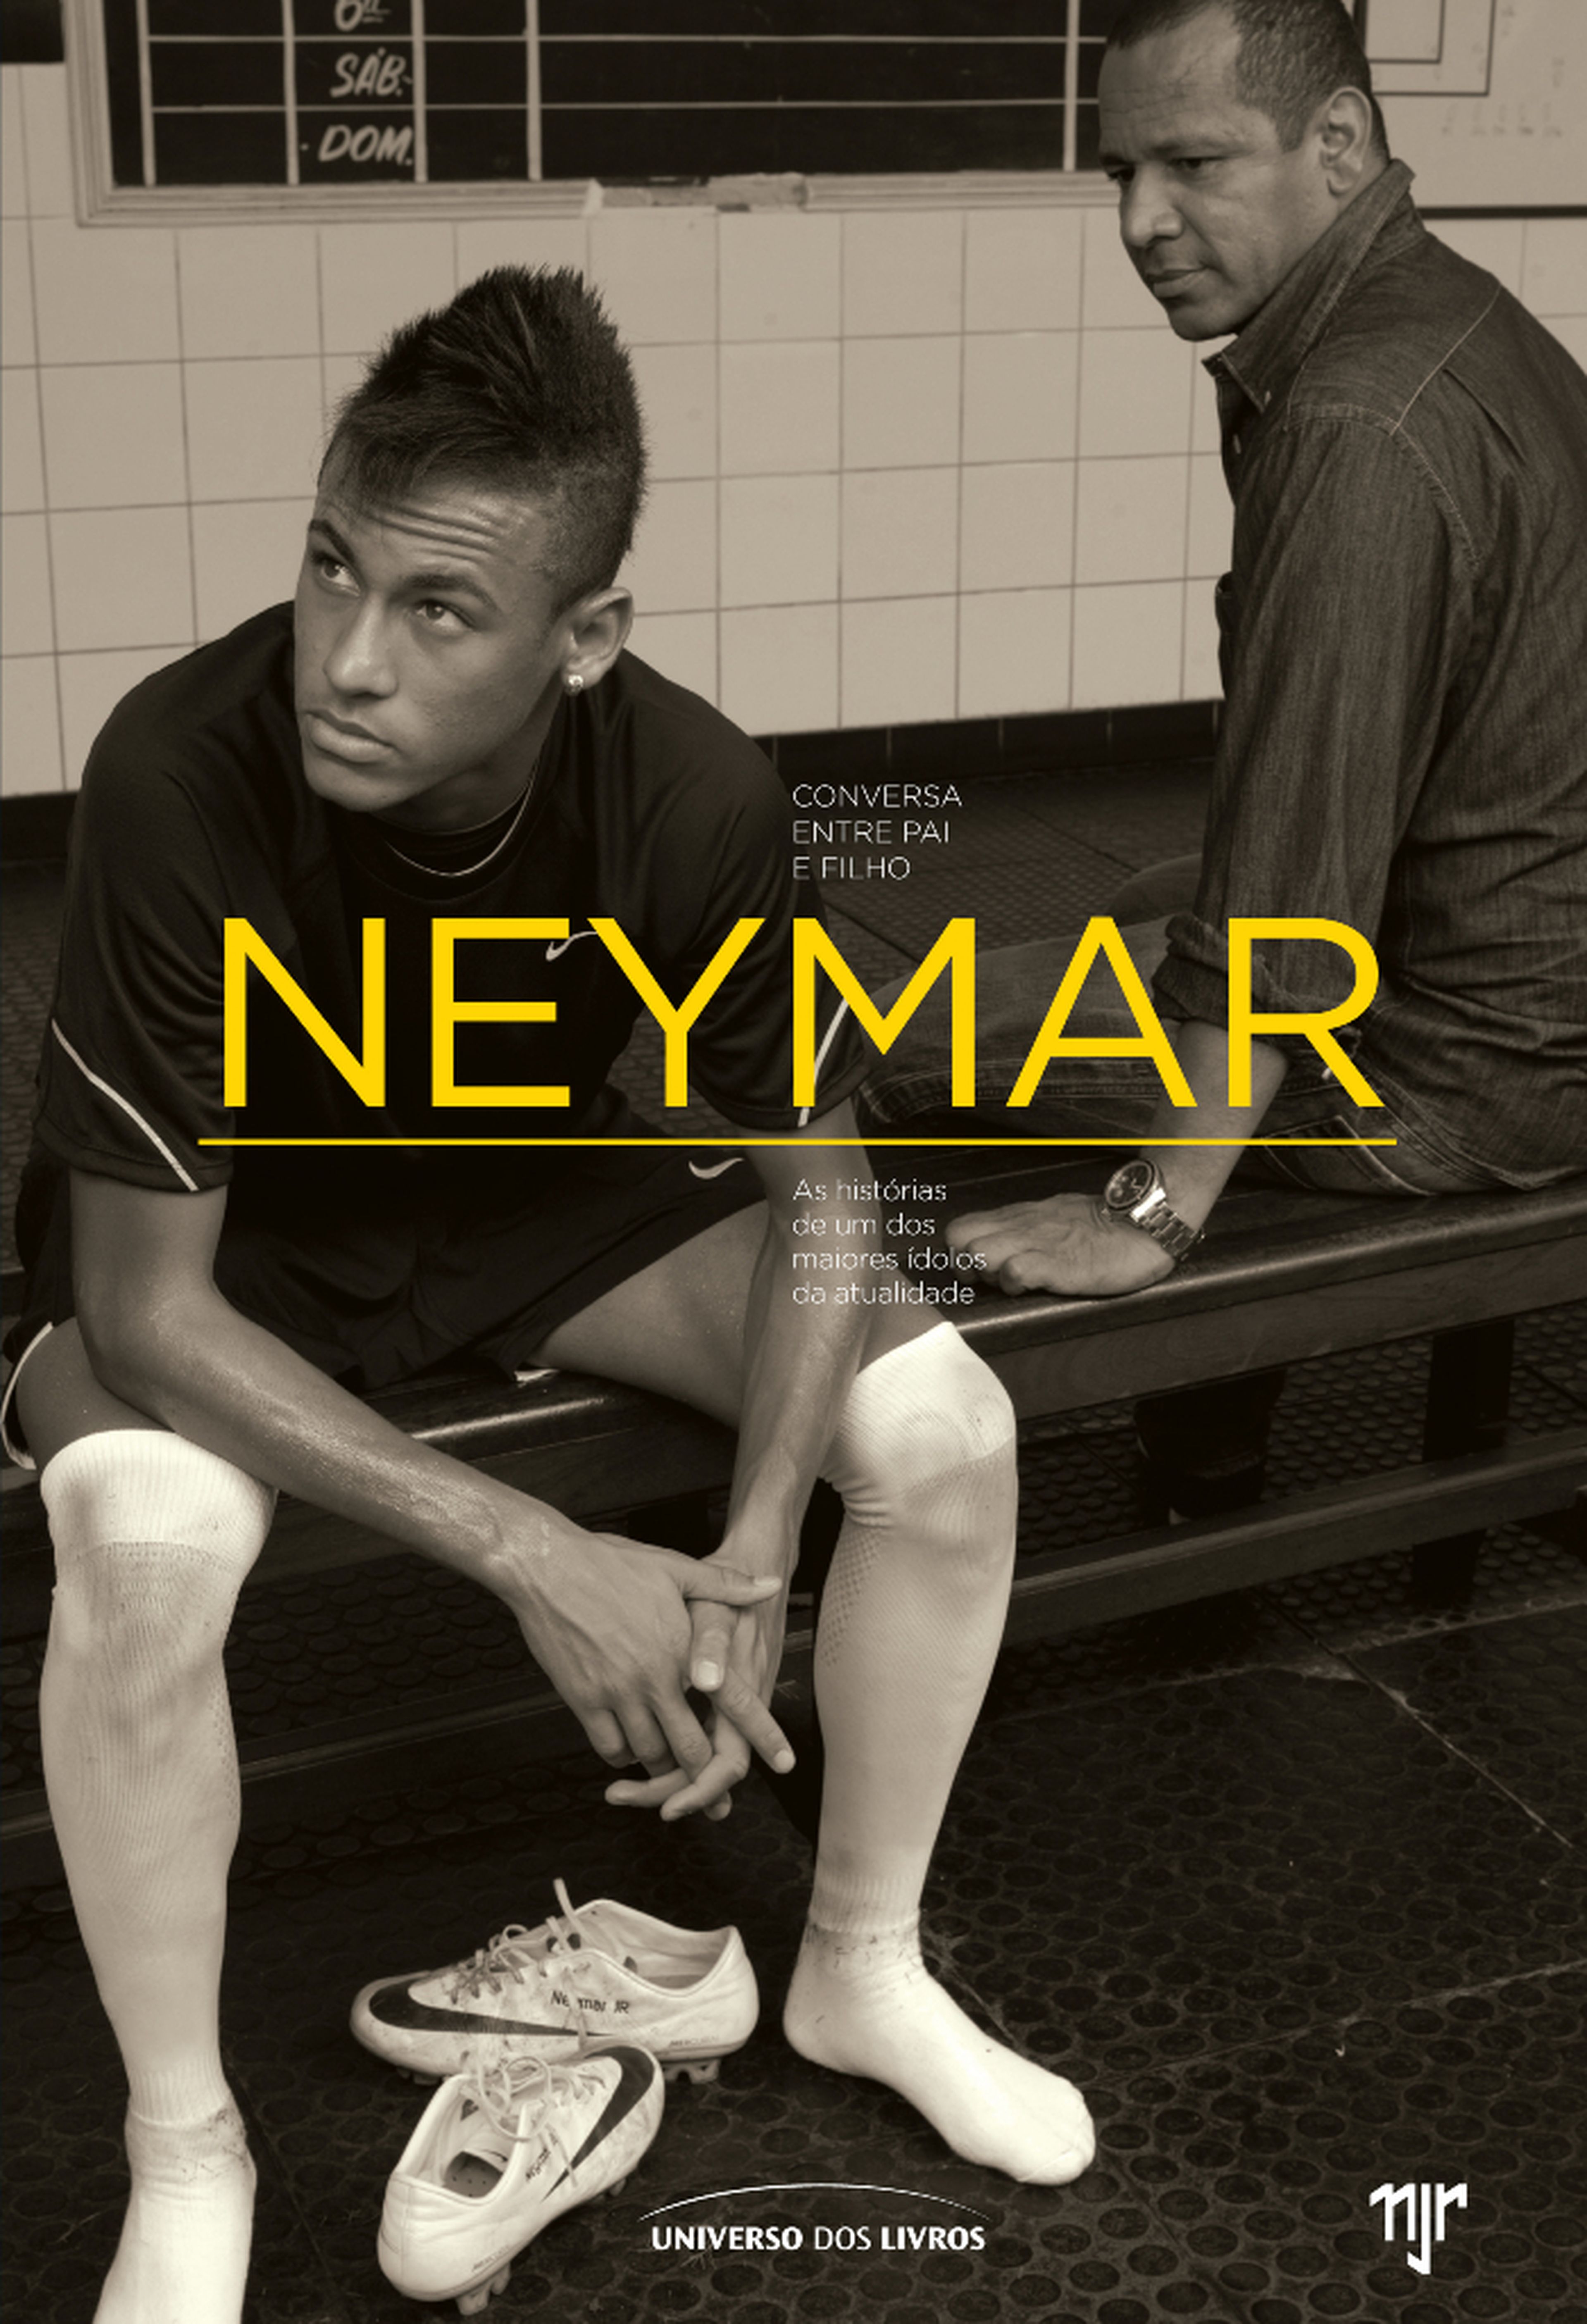 Portada del libro "Neymar, conversa entre pai e filho", de la editorial Universo dos Livros